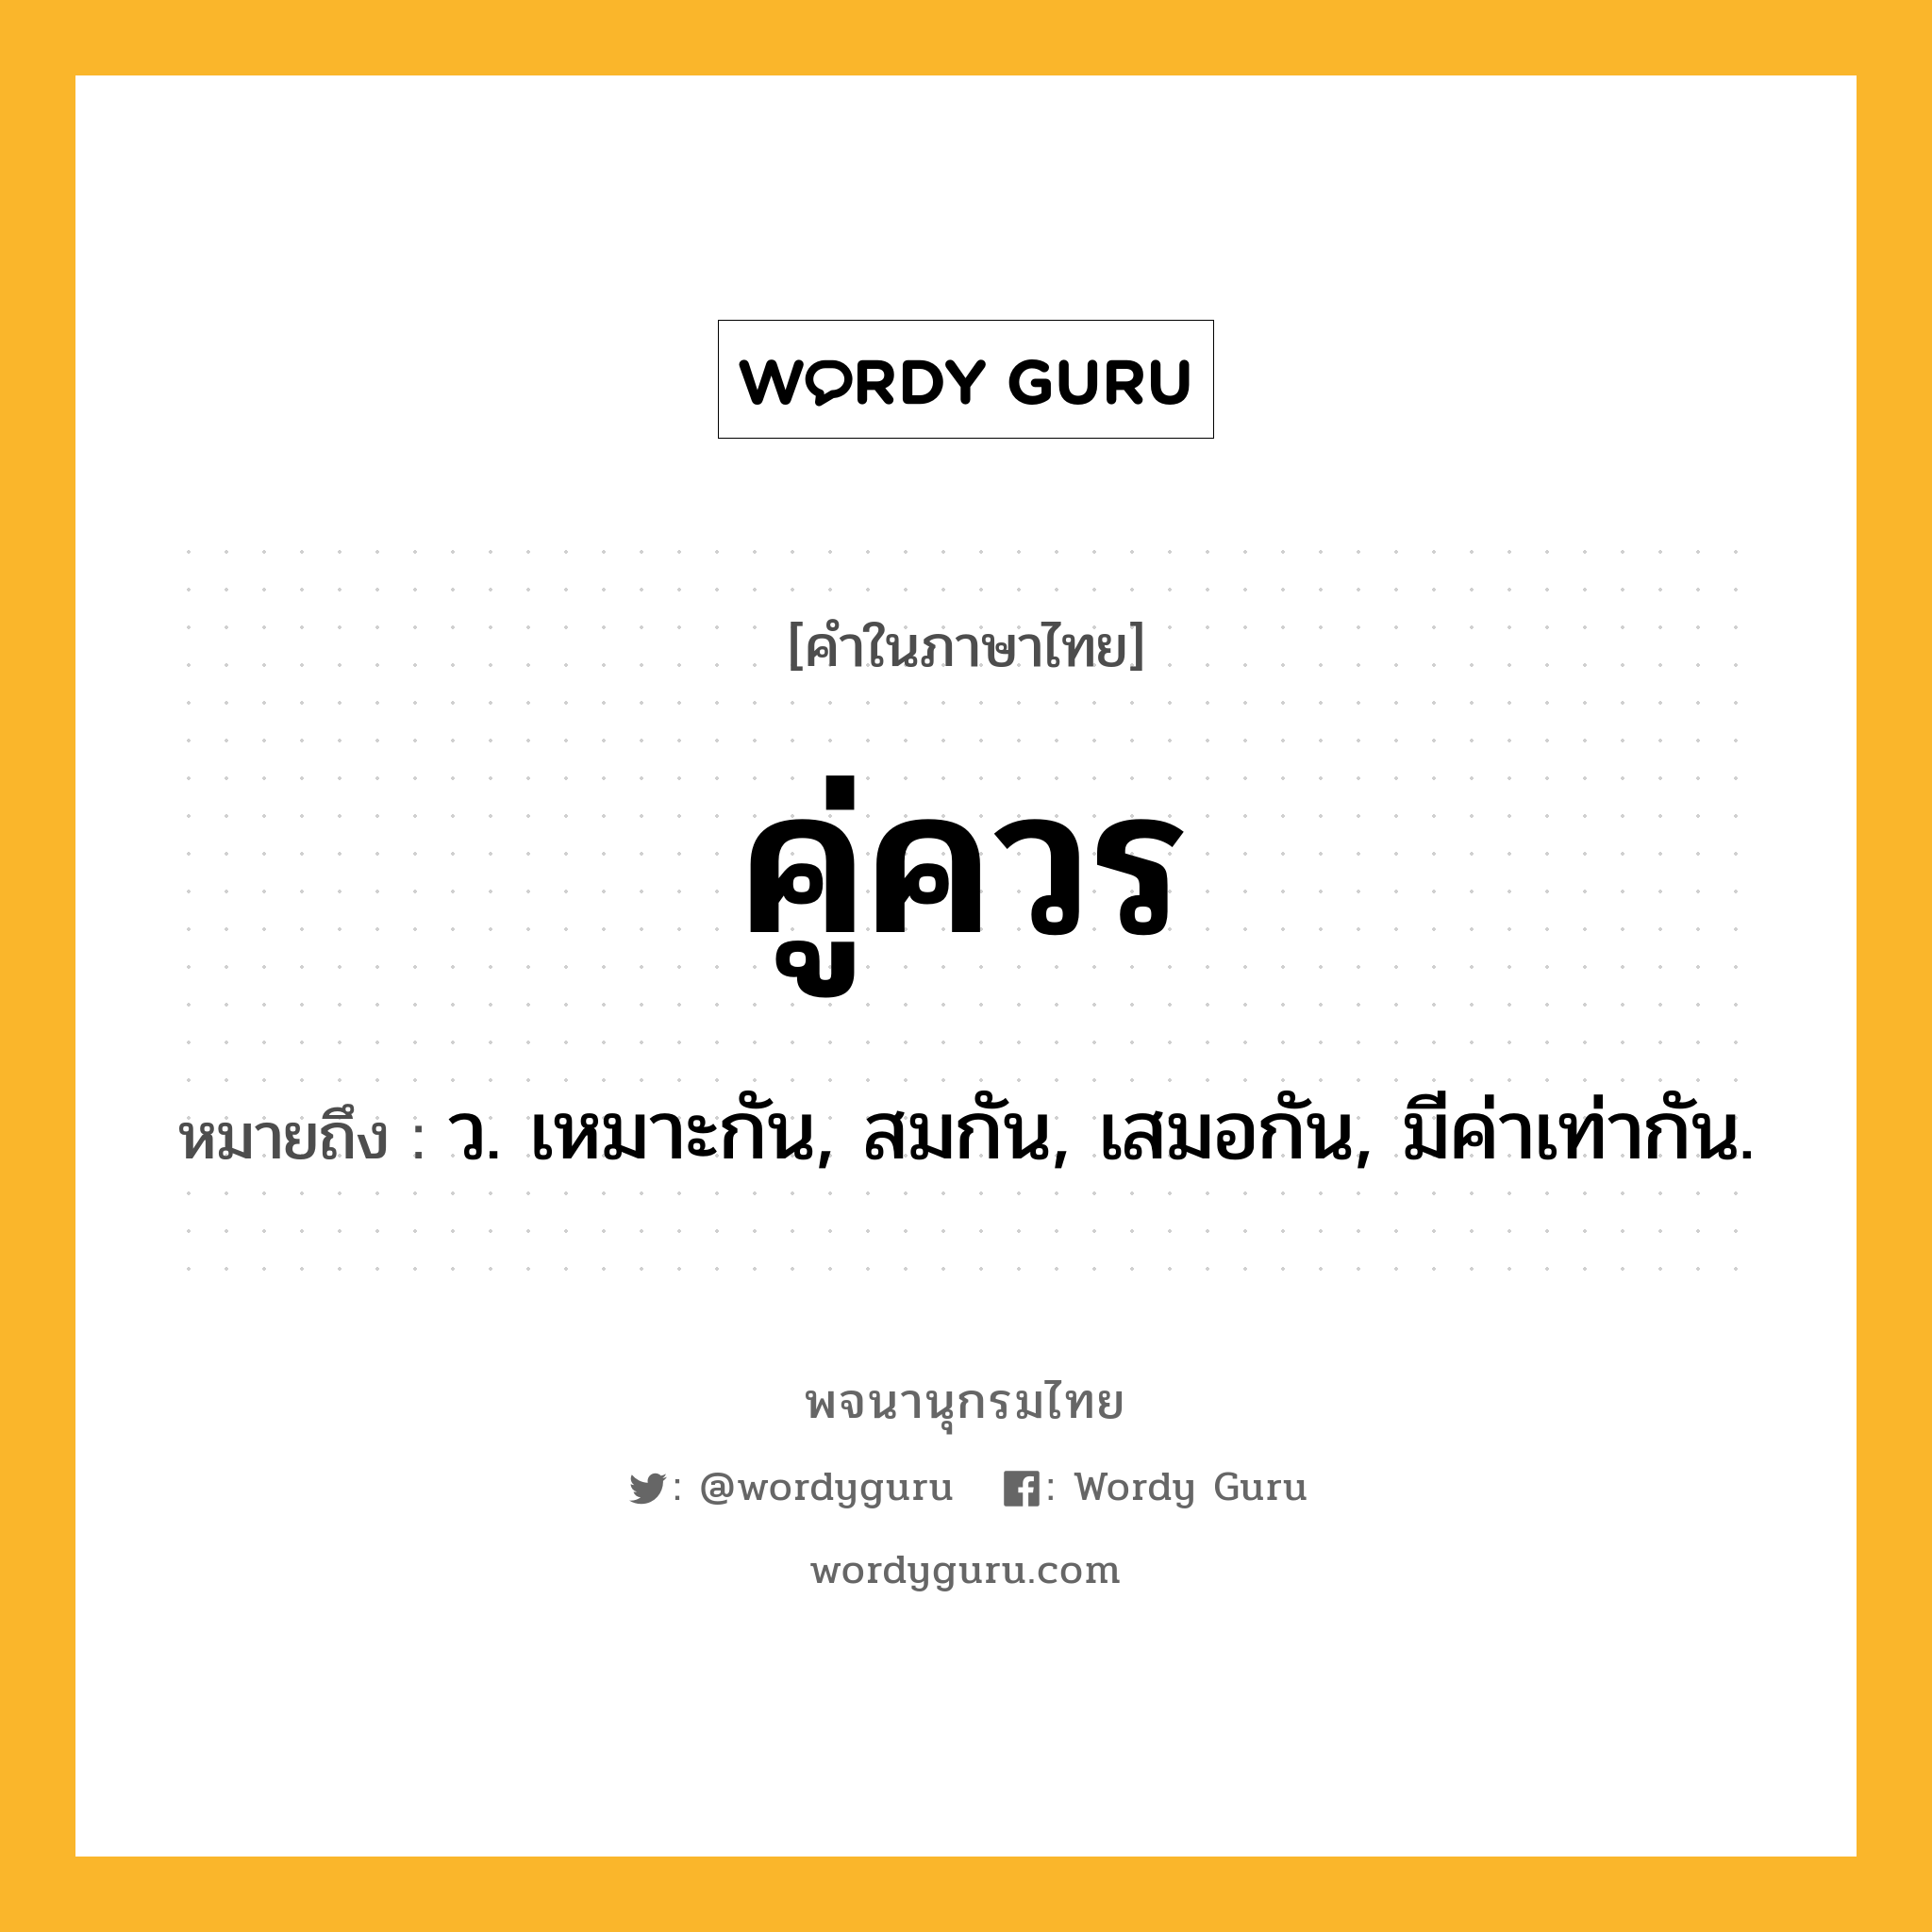 คู่ควร ความหมาย หมายถึงอะไร?, คำในภาษาไทย คู่ควร หมายถึง ว. เหมาะกัน, สมกัน, เสมอกัน, มีค่าเท่ากัน.